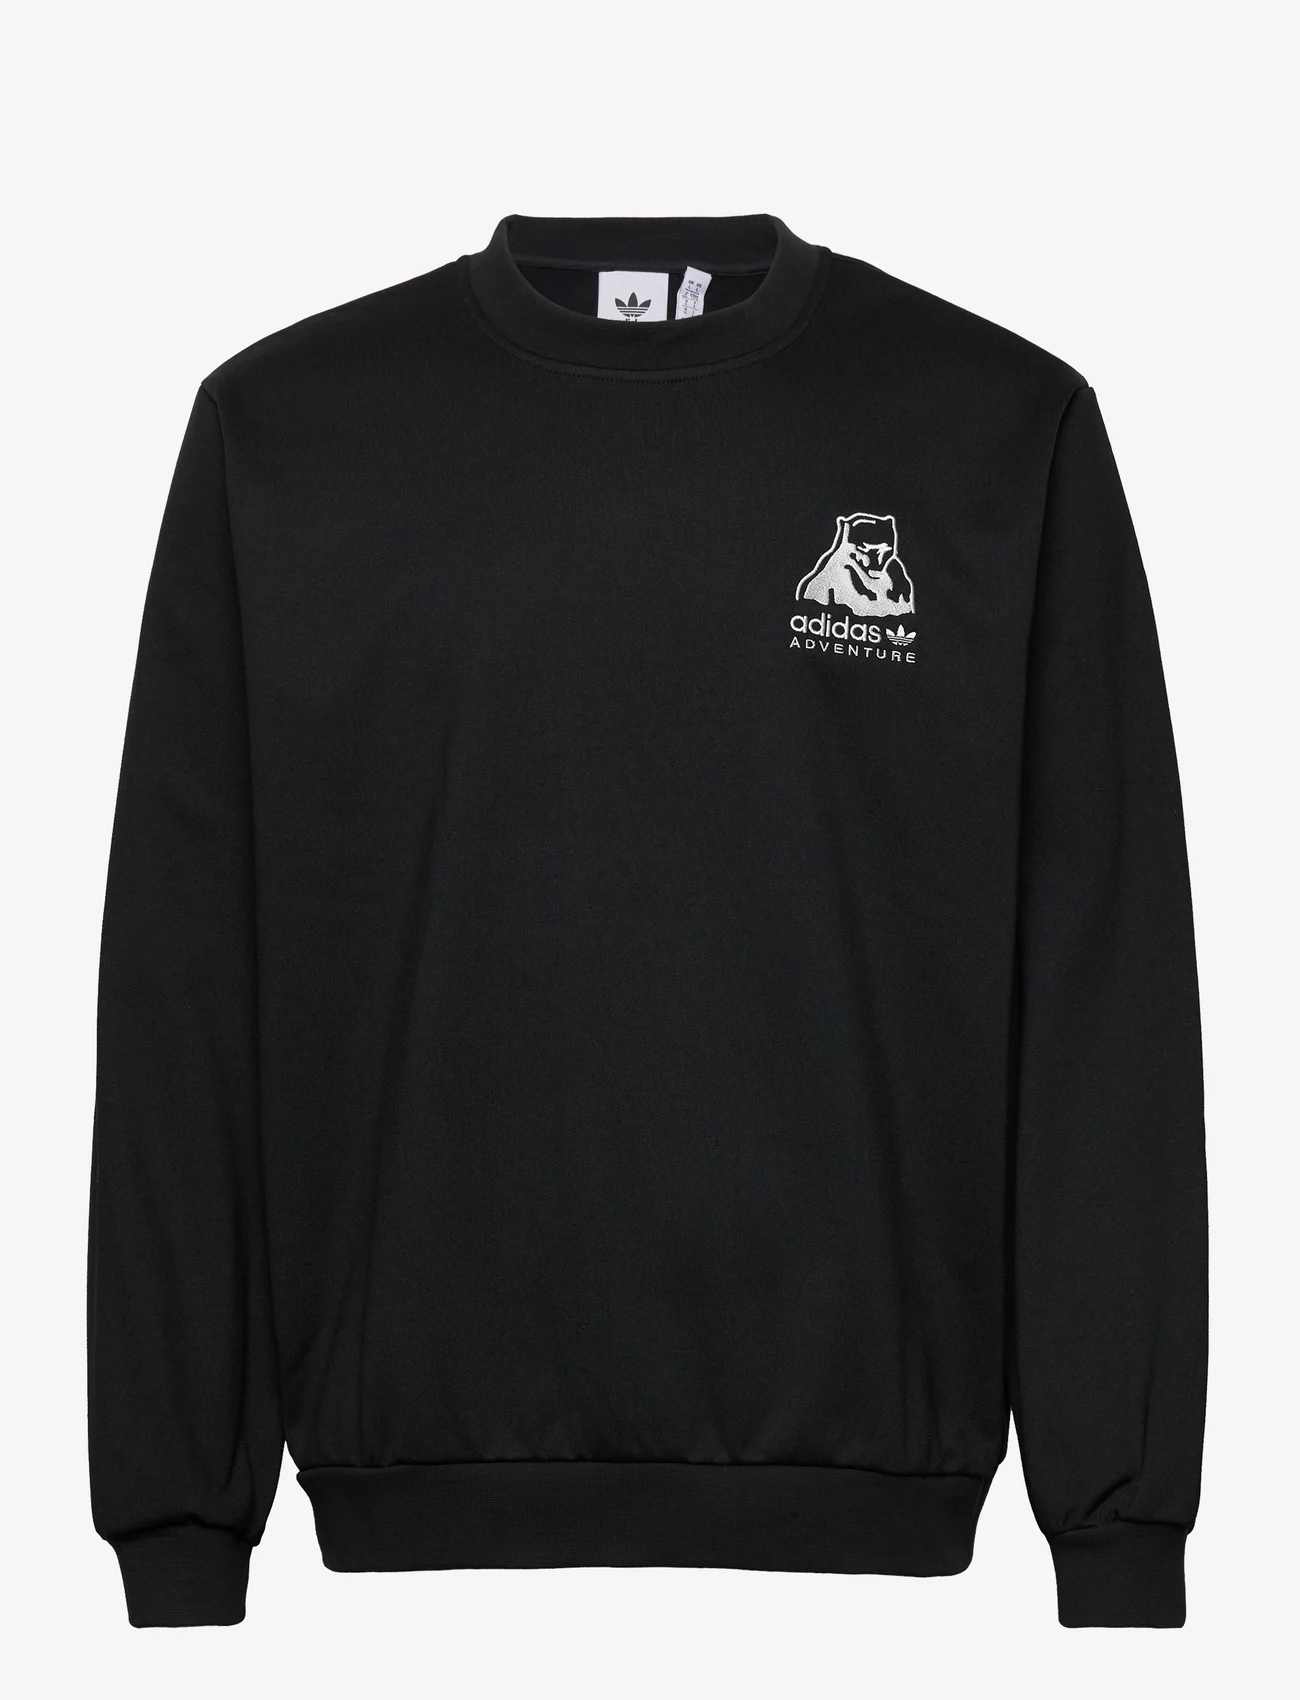 adidas Originals - adidas Adventure Winter Crewneck Sweatshirt - jogginghosen - black - 0